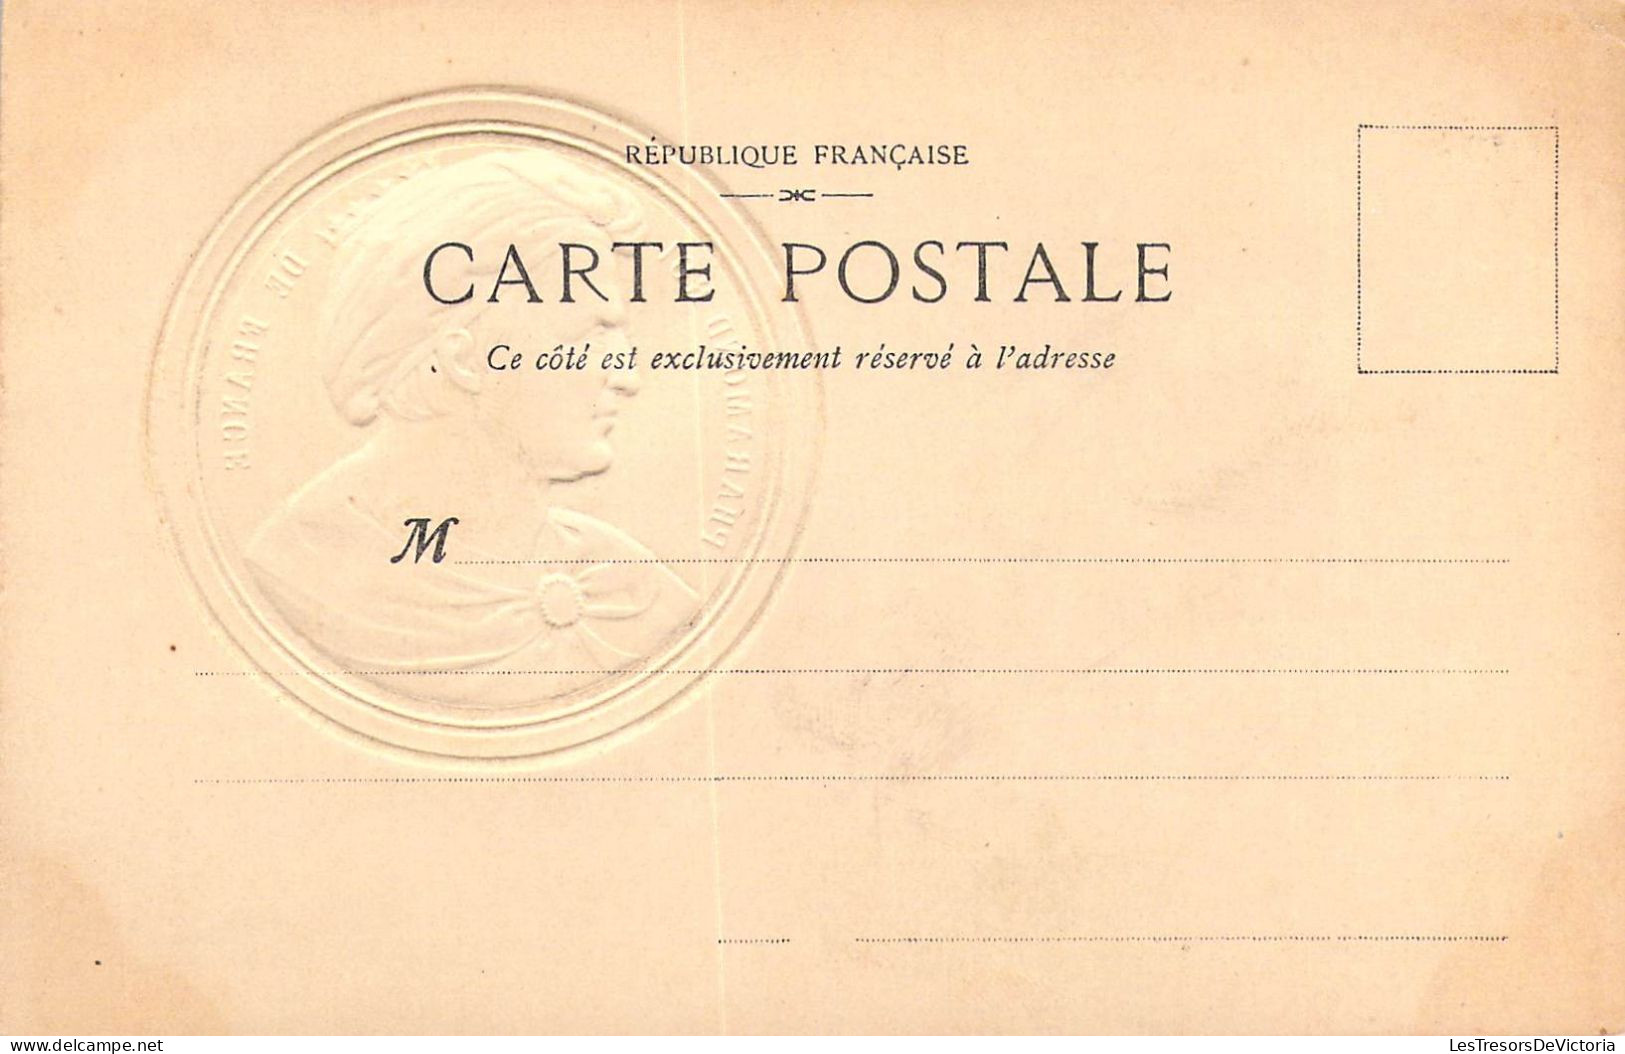 PERSONNAGES HISTORIQUES - Pharamond Roi De France - Carte Postale Ancienne - Personnages Historiques